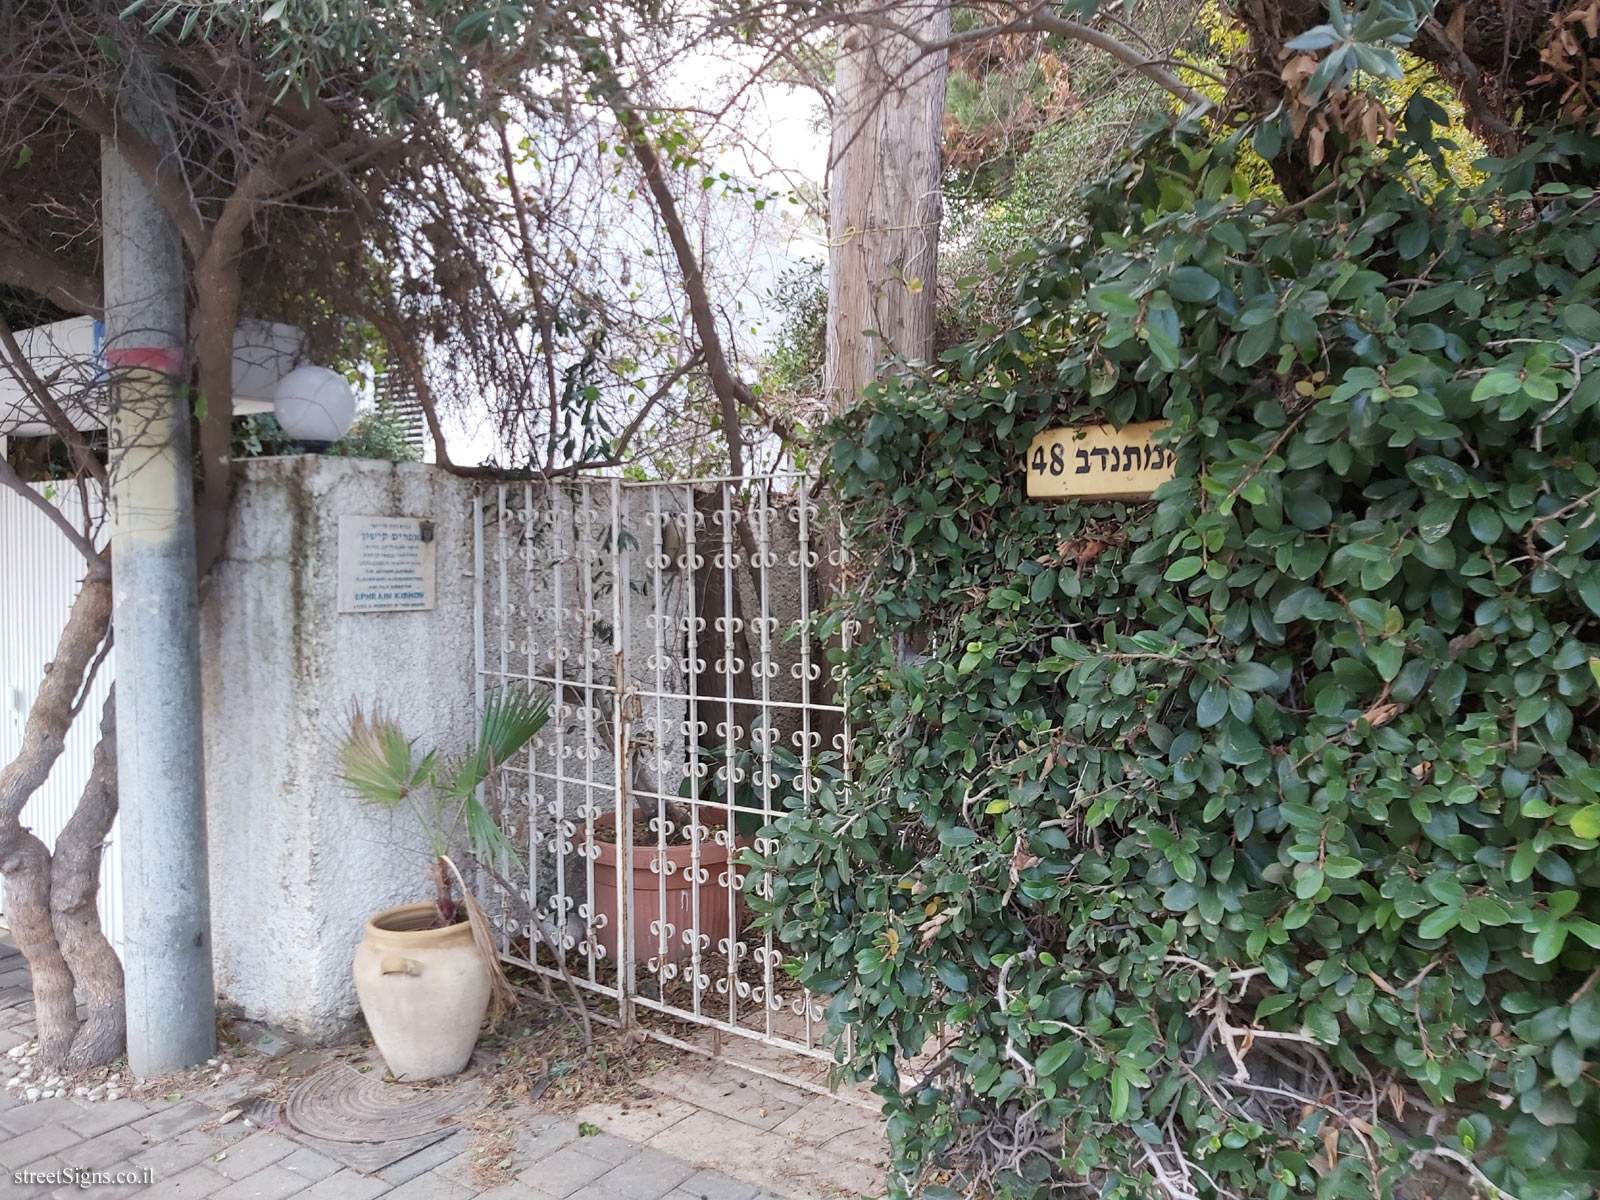 The house of Ephraim Kishon - HaMitnadev St 48, Tel Aviv-Yafo, Israel